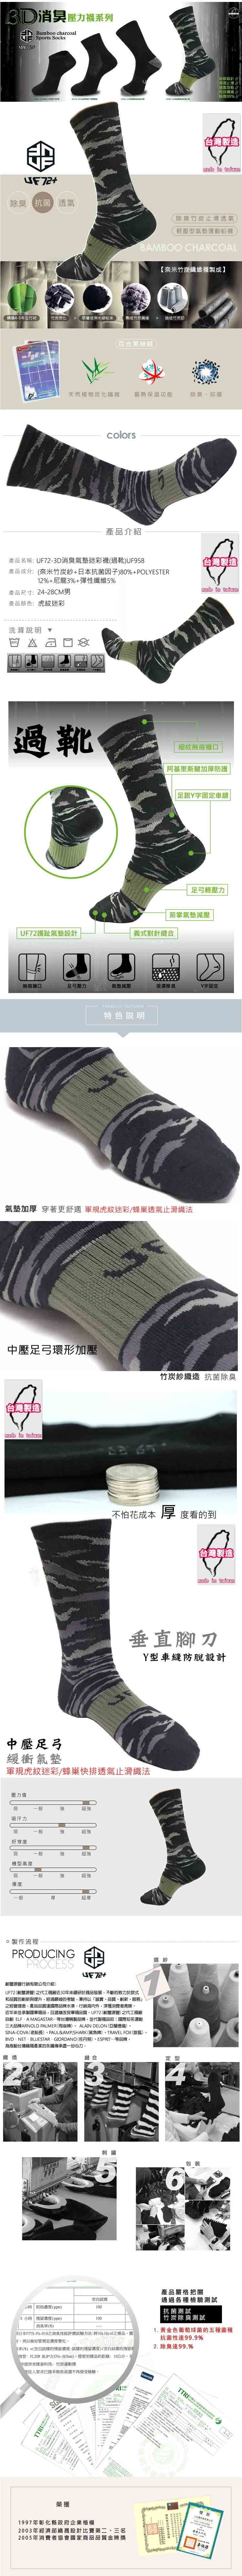 【UF72+】UF958 3D消臭動能氣墊迷彩襪 1